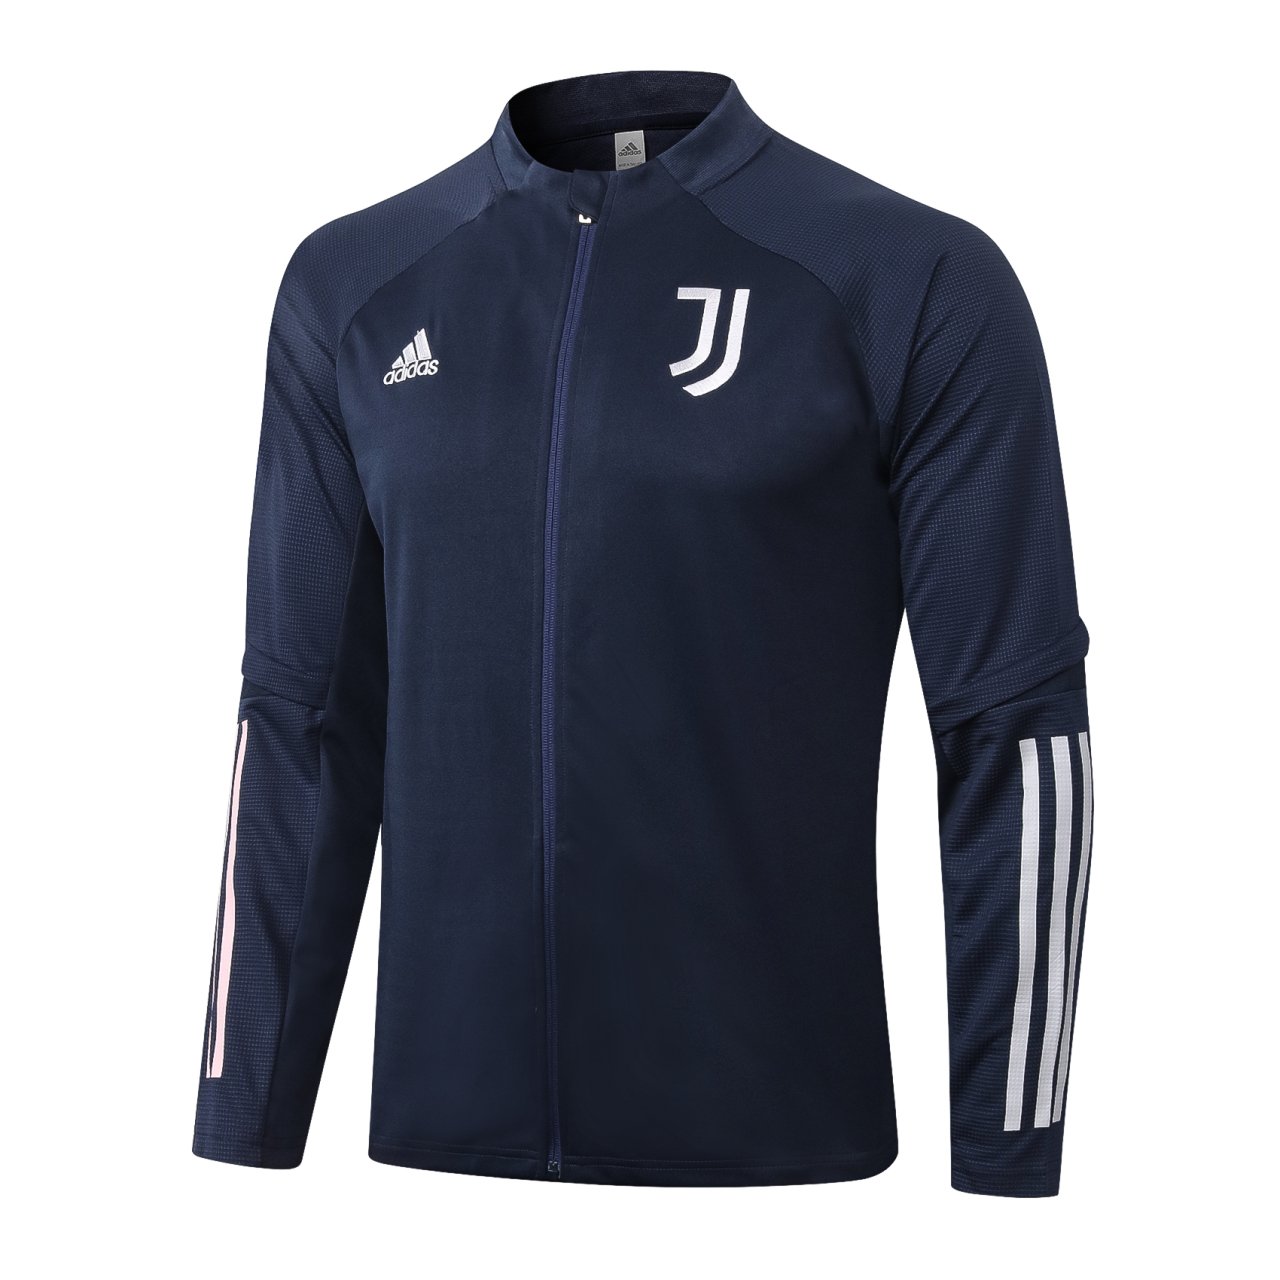 Juventus Ceket